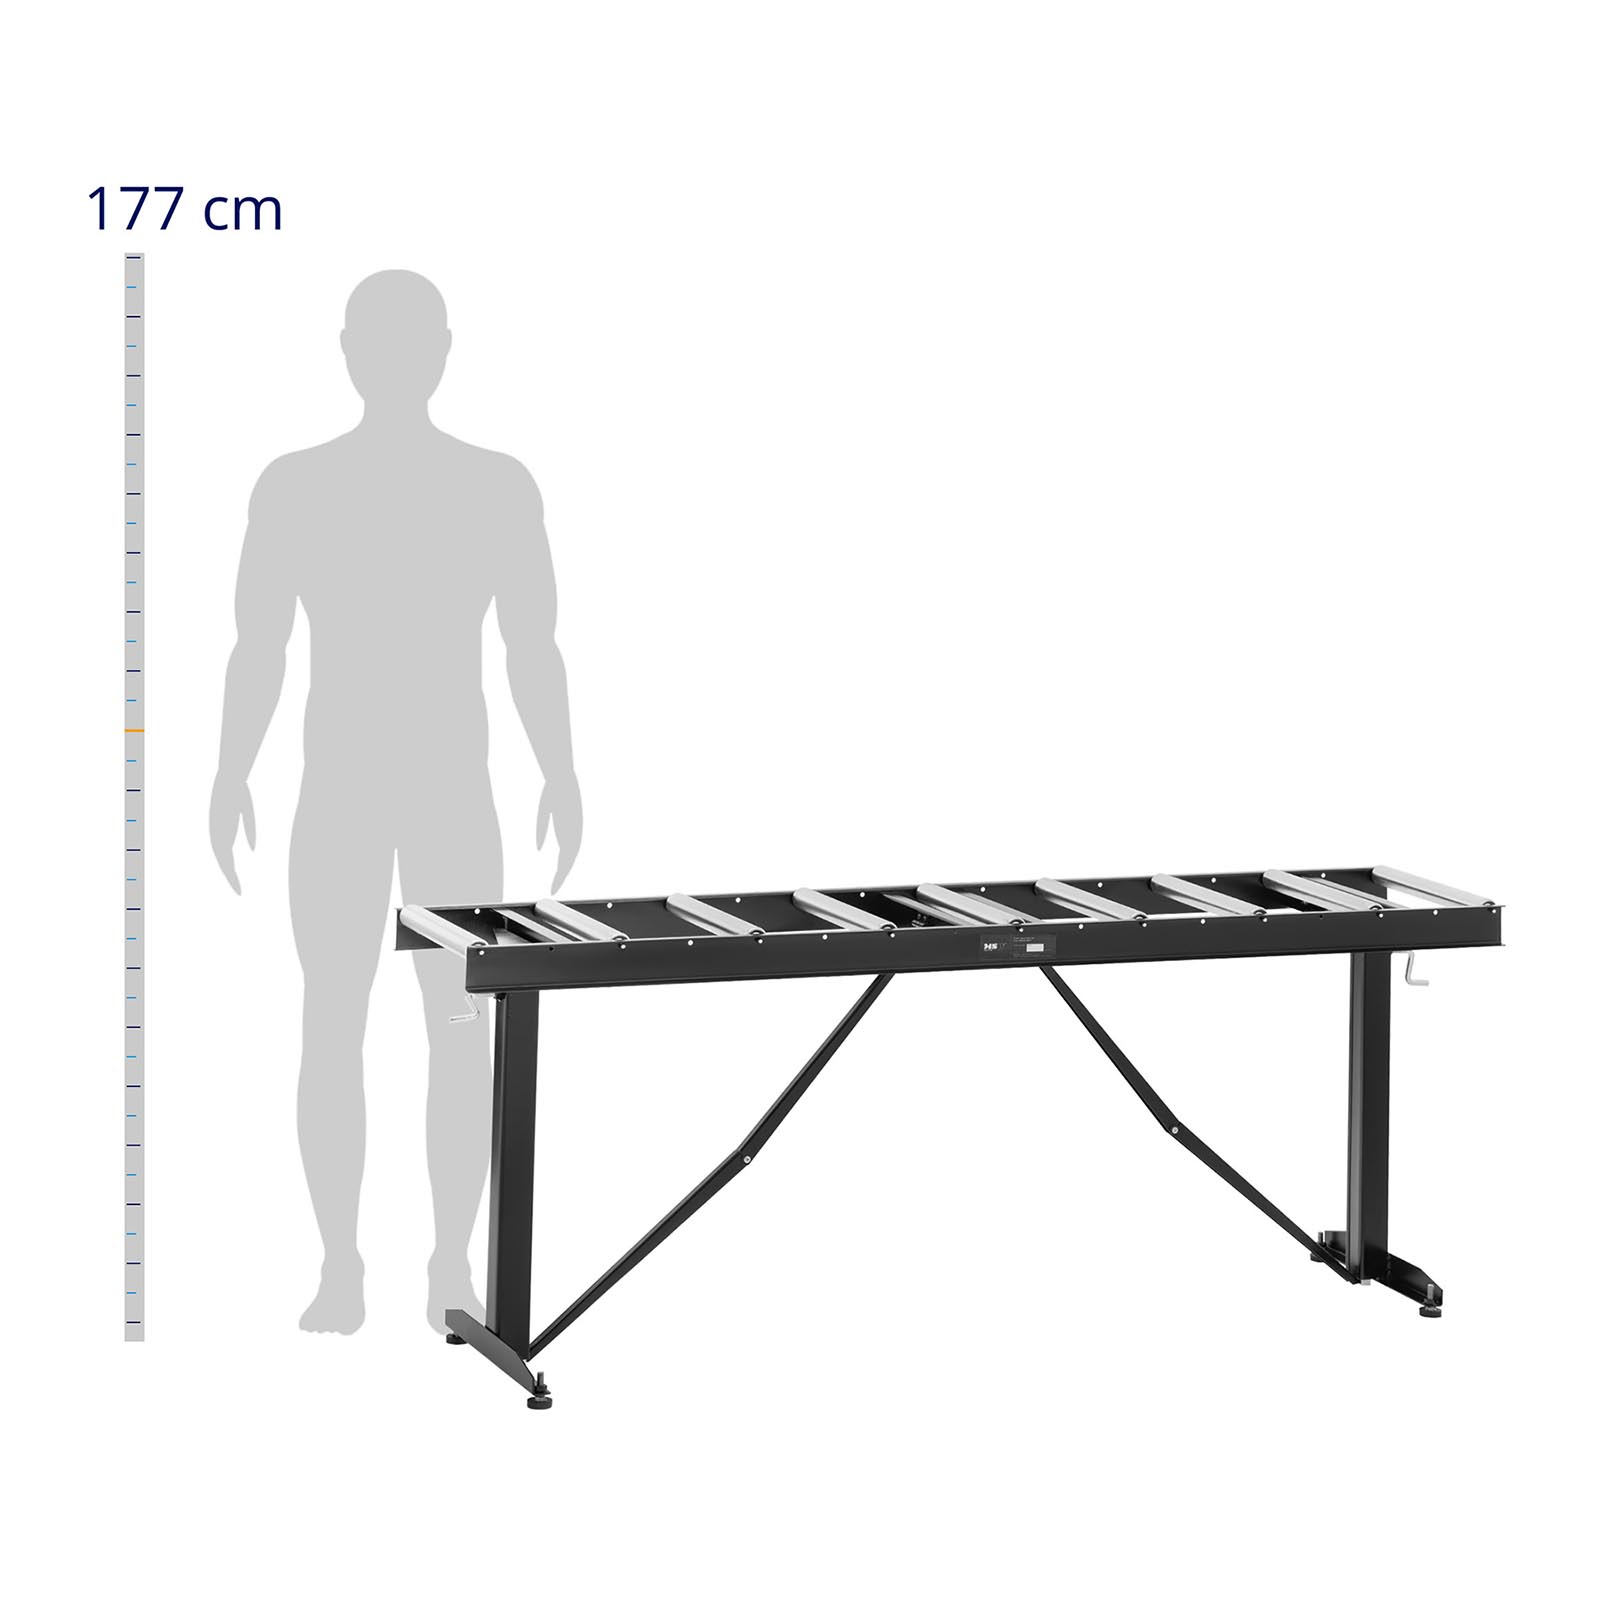 Podajnik rolkowy - 200 kg - 167 x 35 cm - 9 rolek - regulowana wysokość